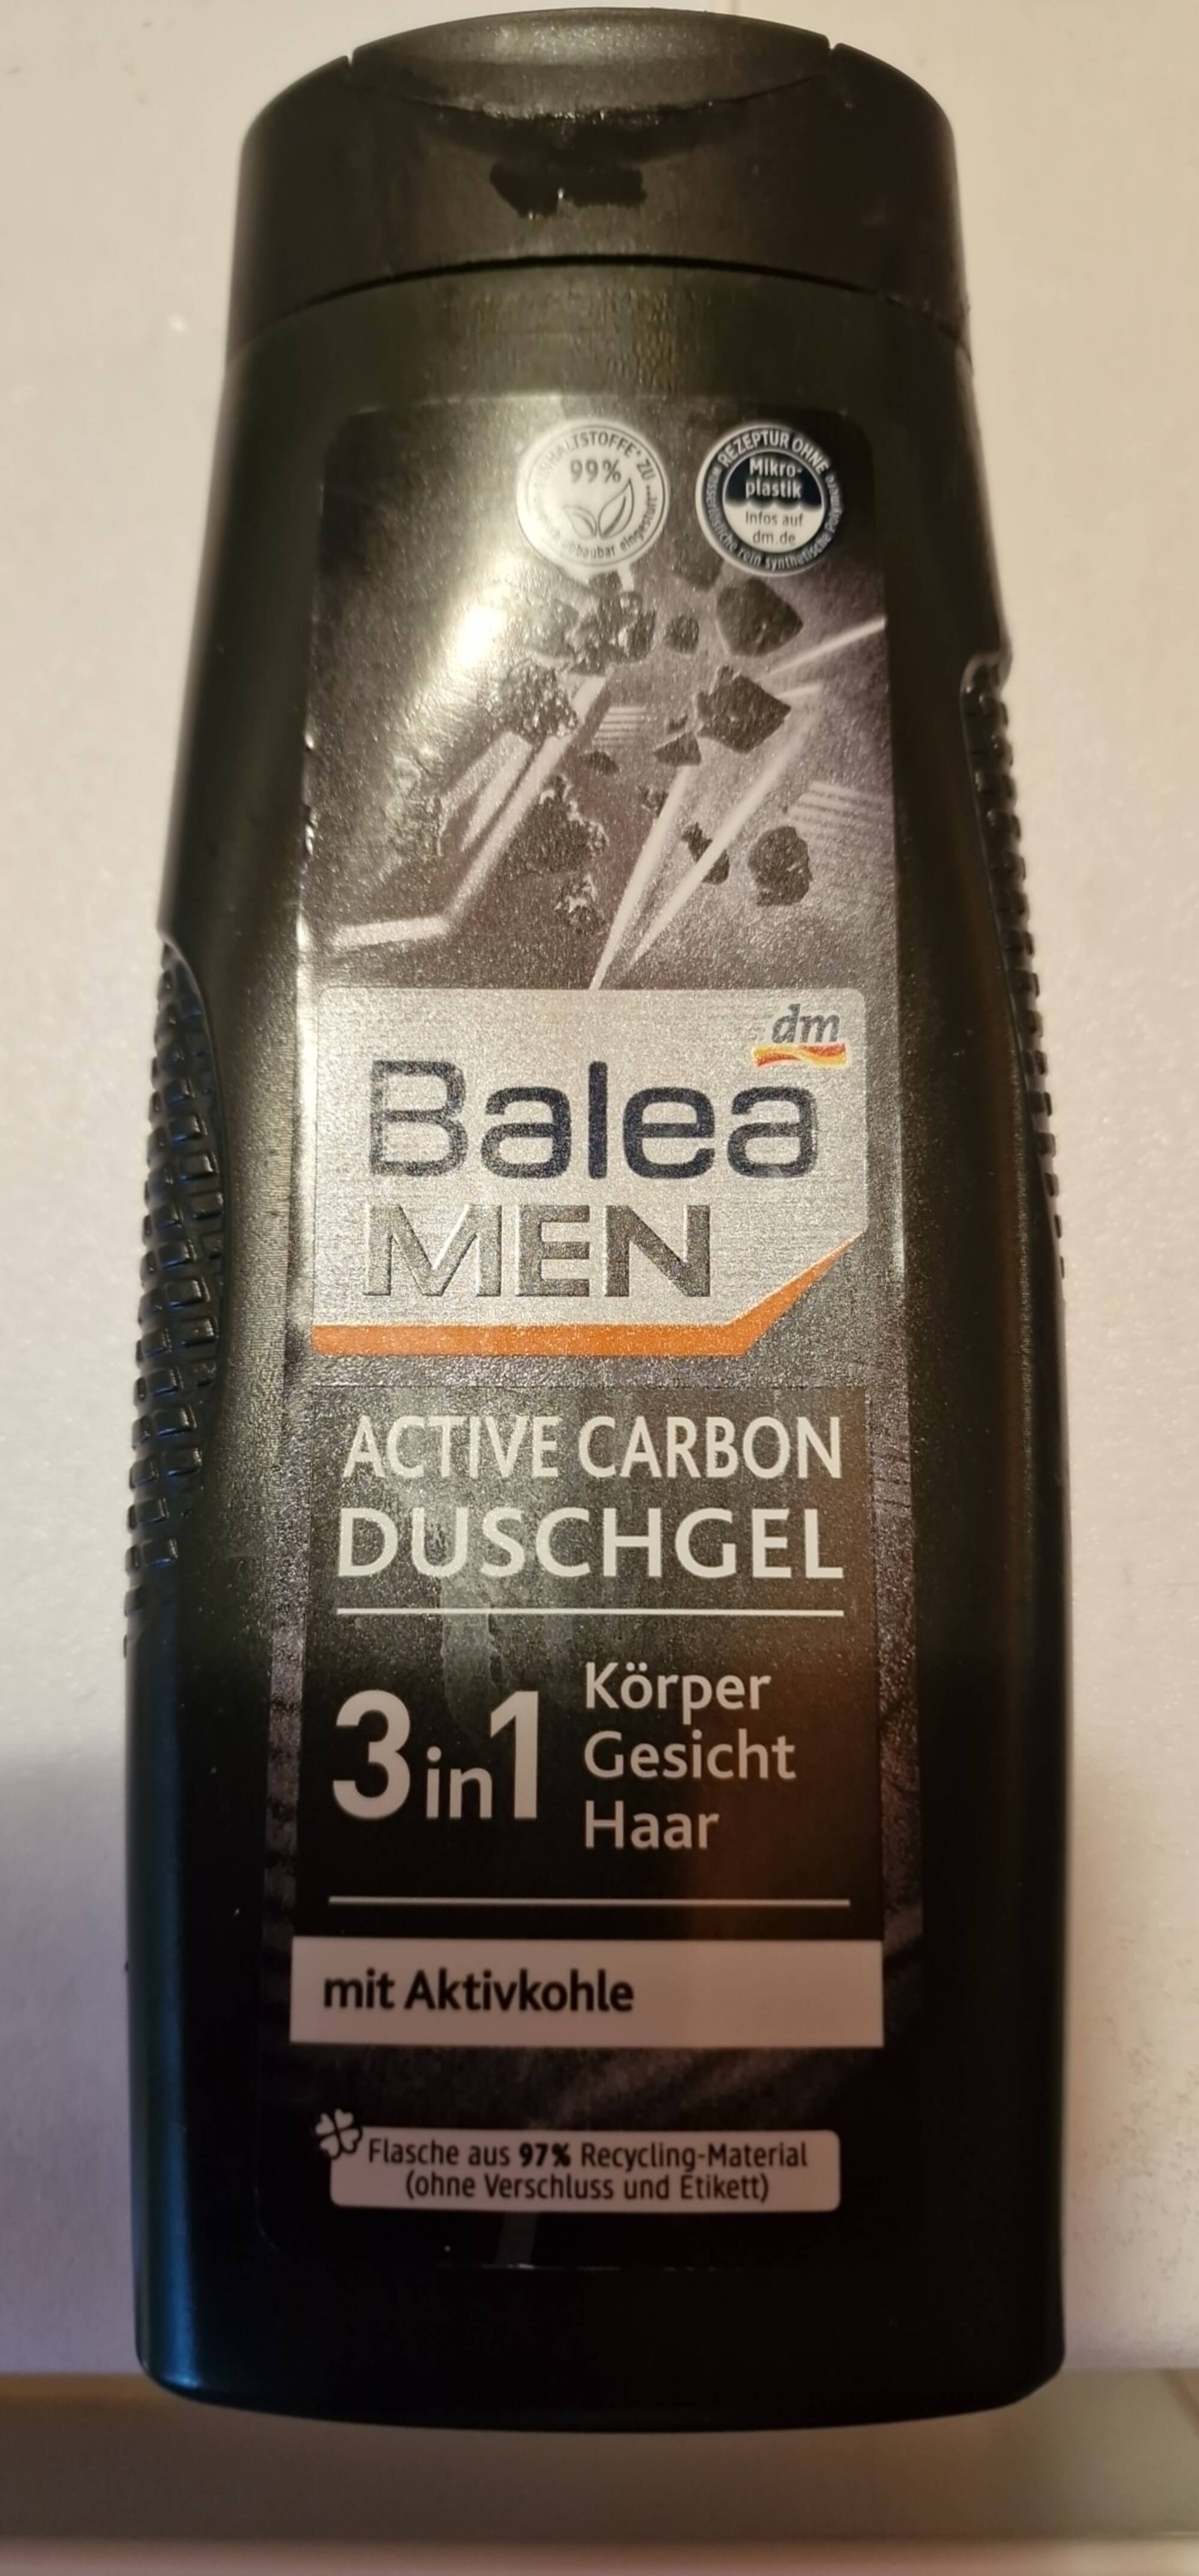 BALEA MEN - Active carbon - Duschgel 3 in 1